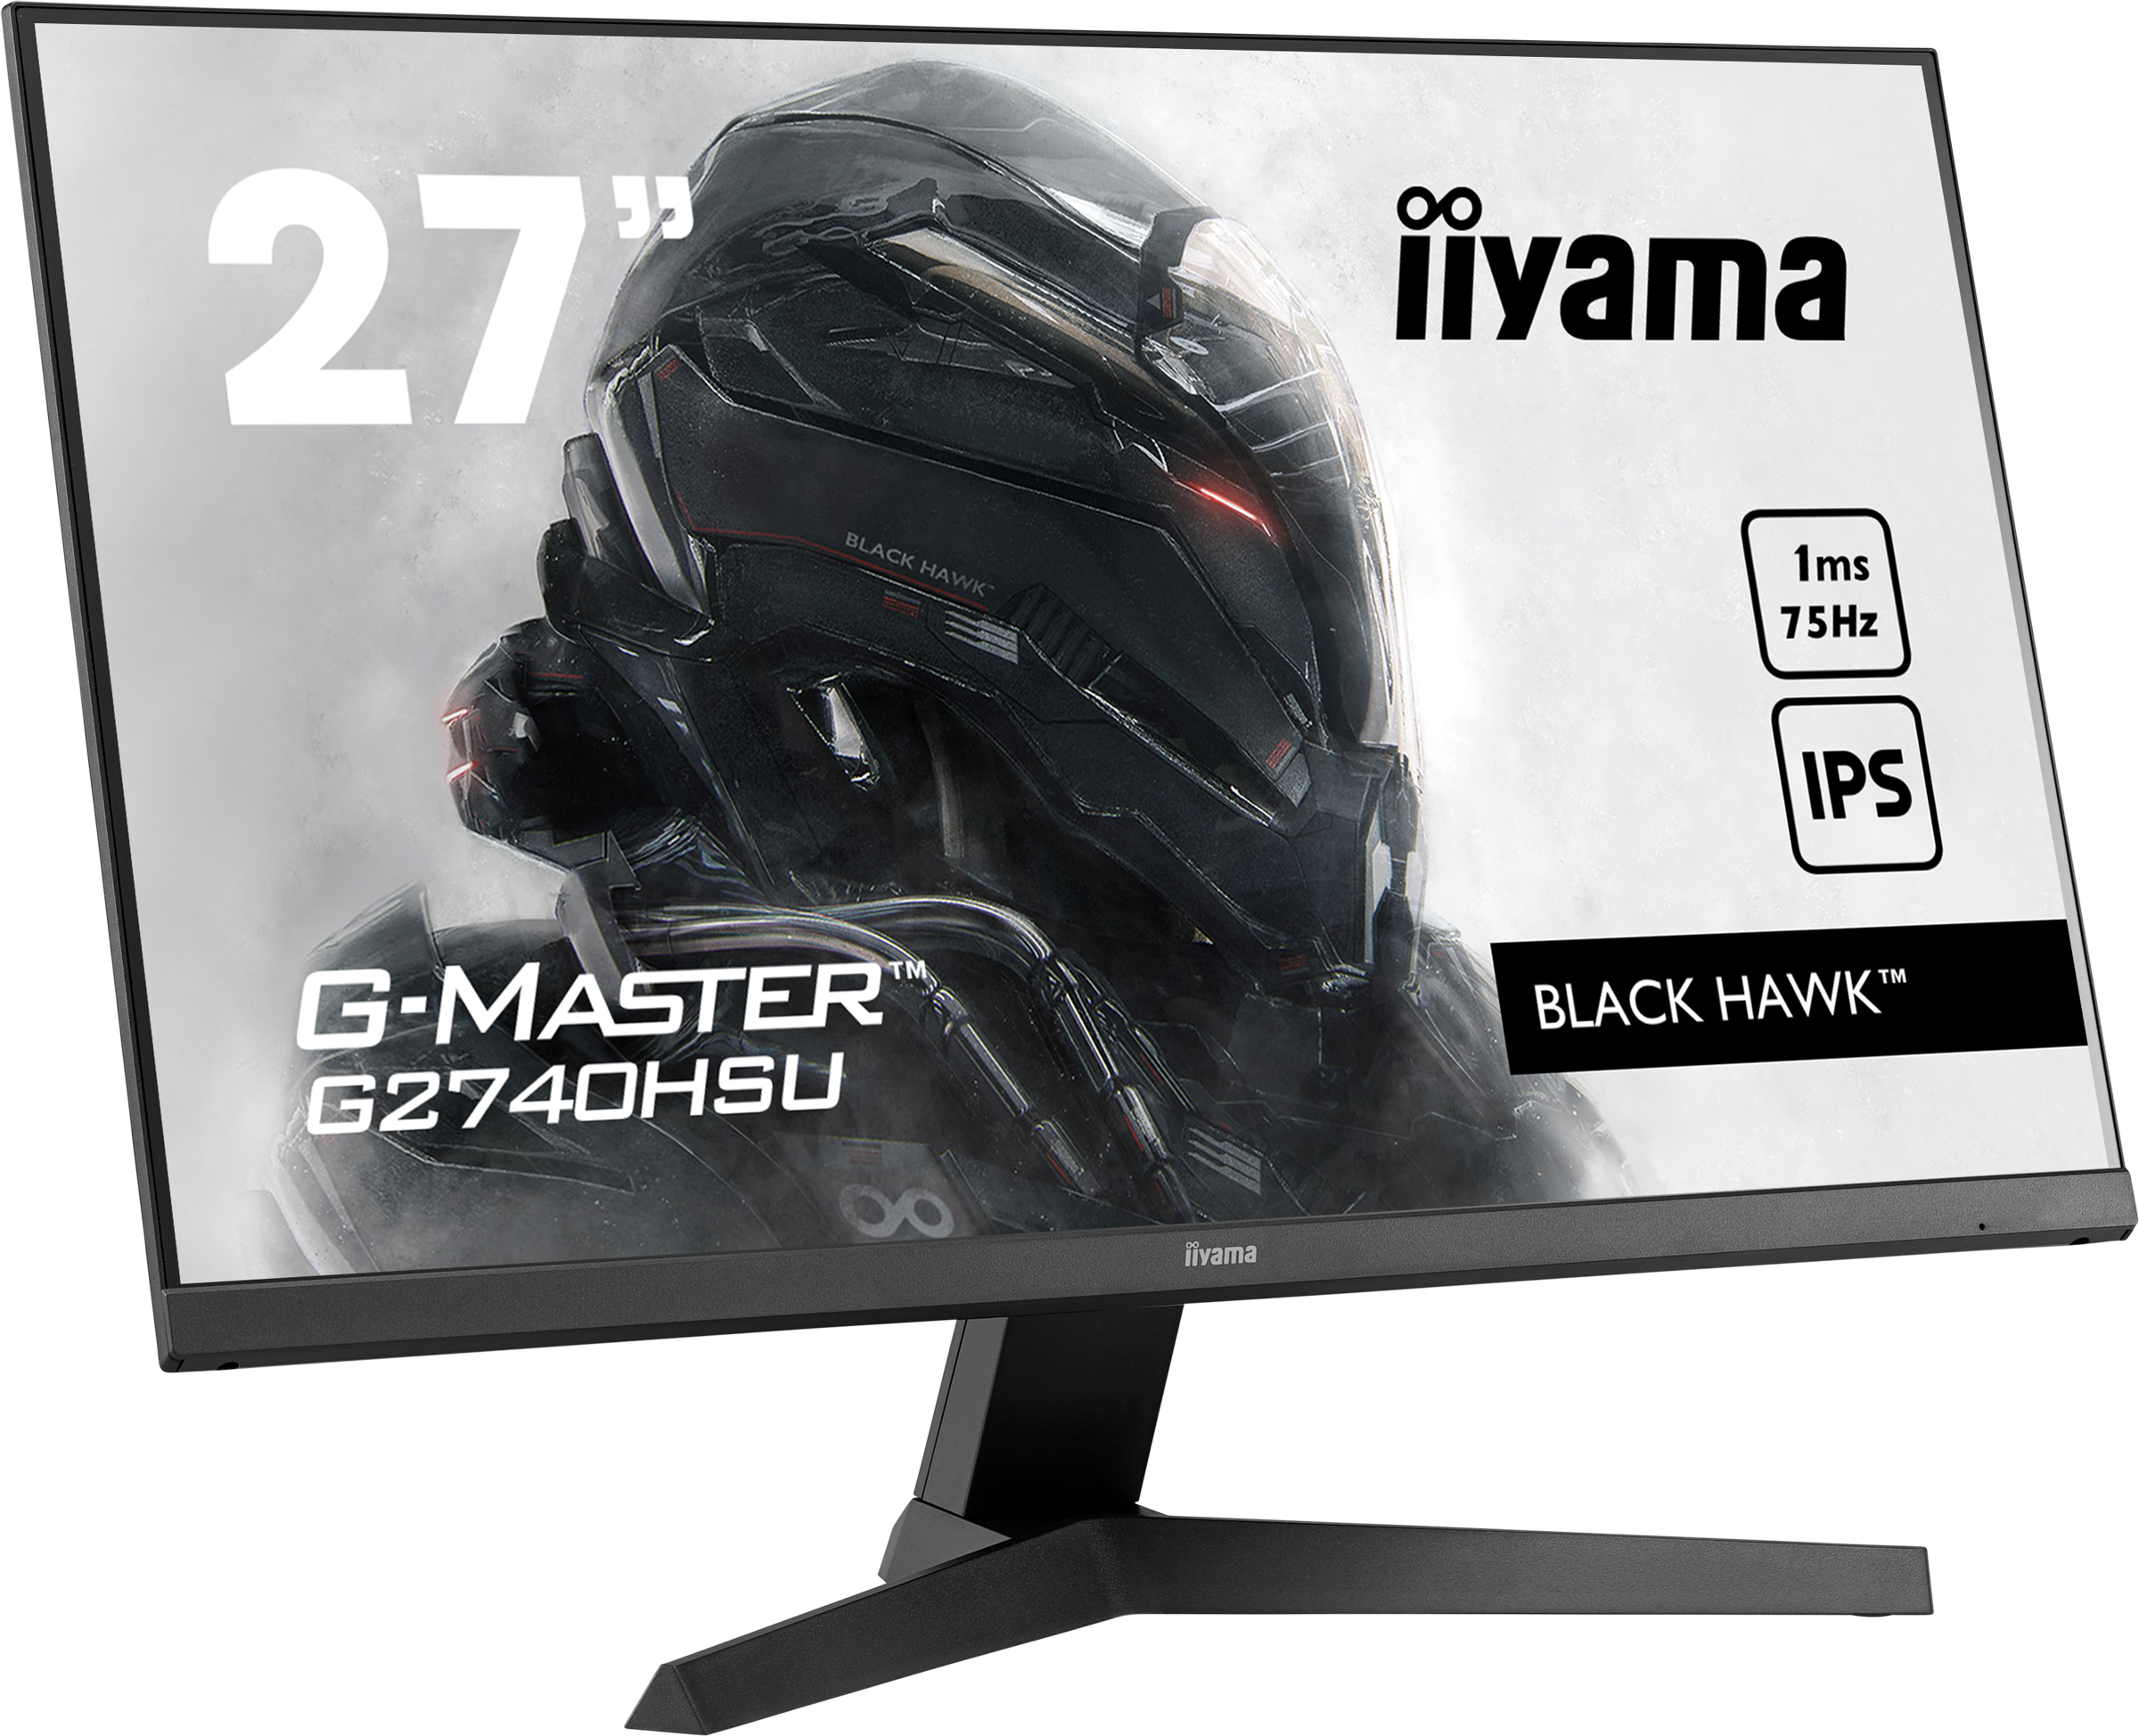 Iiyama G-MASTER G2740HSU-B1 BLACK HAWK | 27" | 75Hz | Gaming Monitor